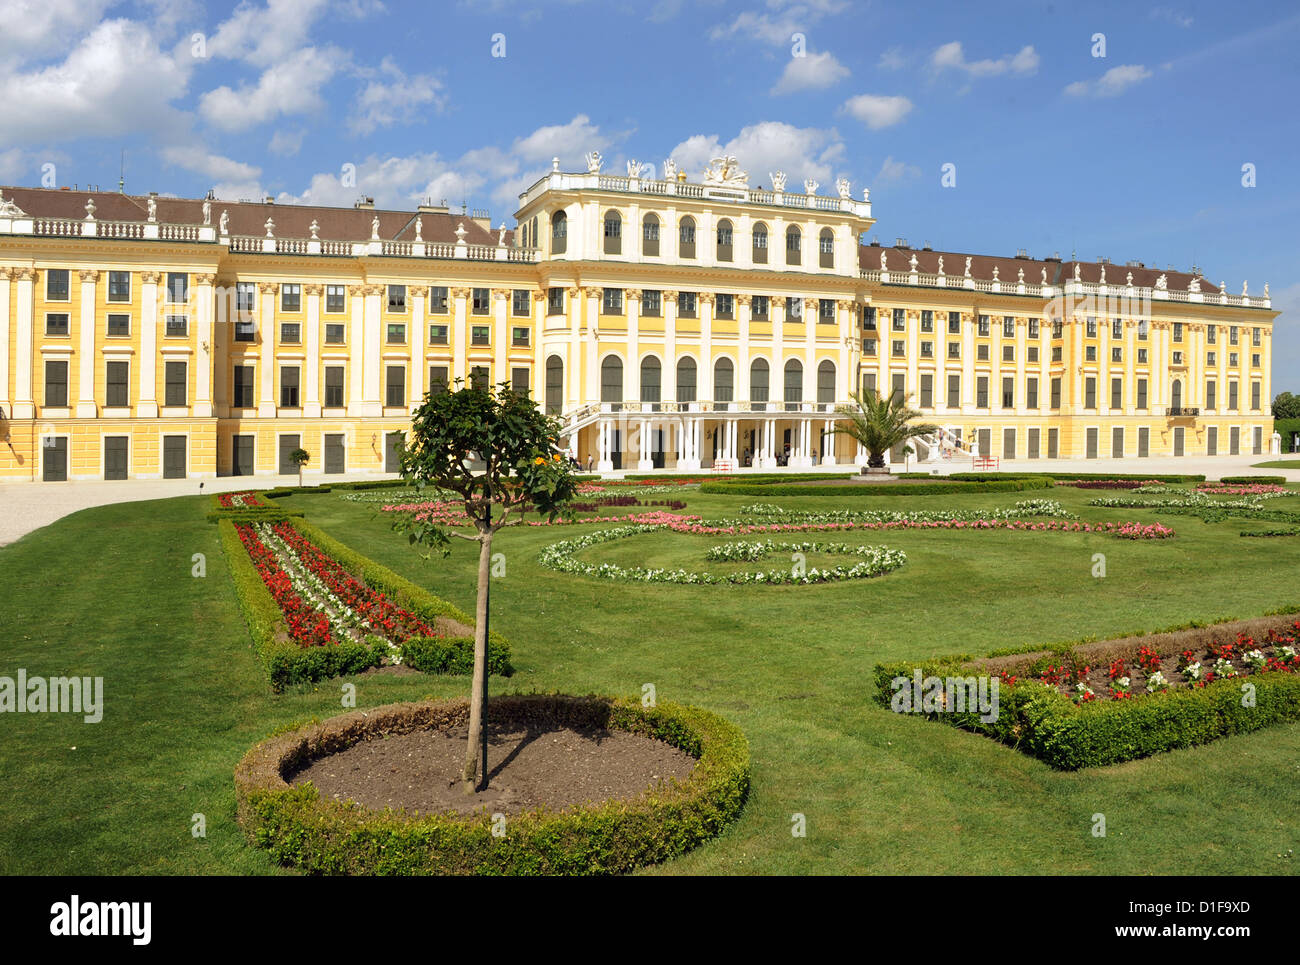 Vue sur le palais de Schönbrunn (1638-1643) construit à Vienne, Autriche, 10 mai 2012. Le palais est l'un des plus importants monuments culturels dans le pays. Photo : Waltraud Grubitzsch Banque D'Images